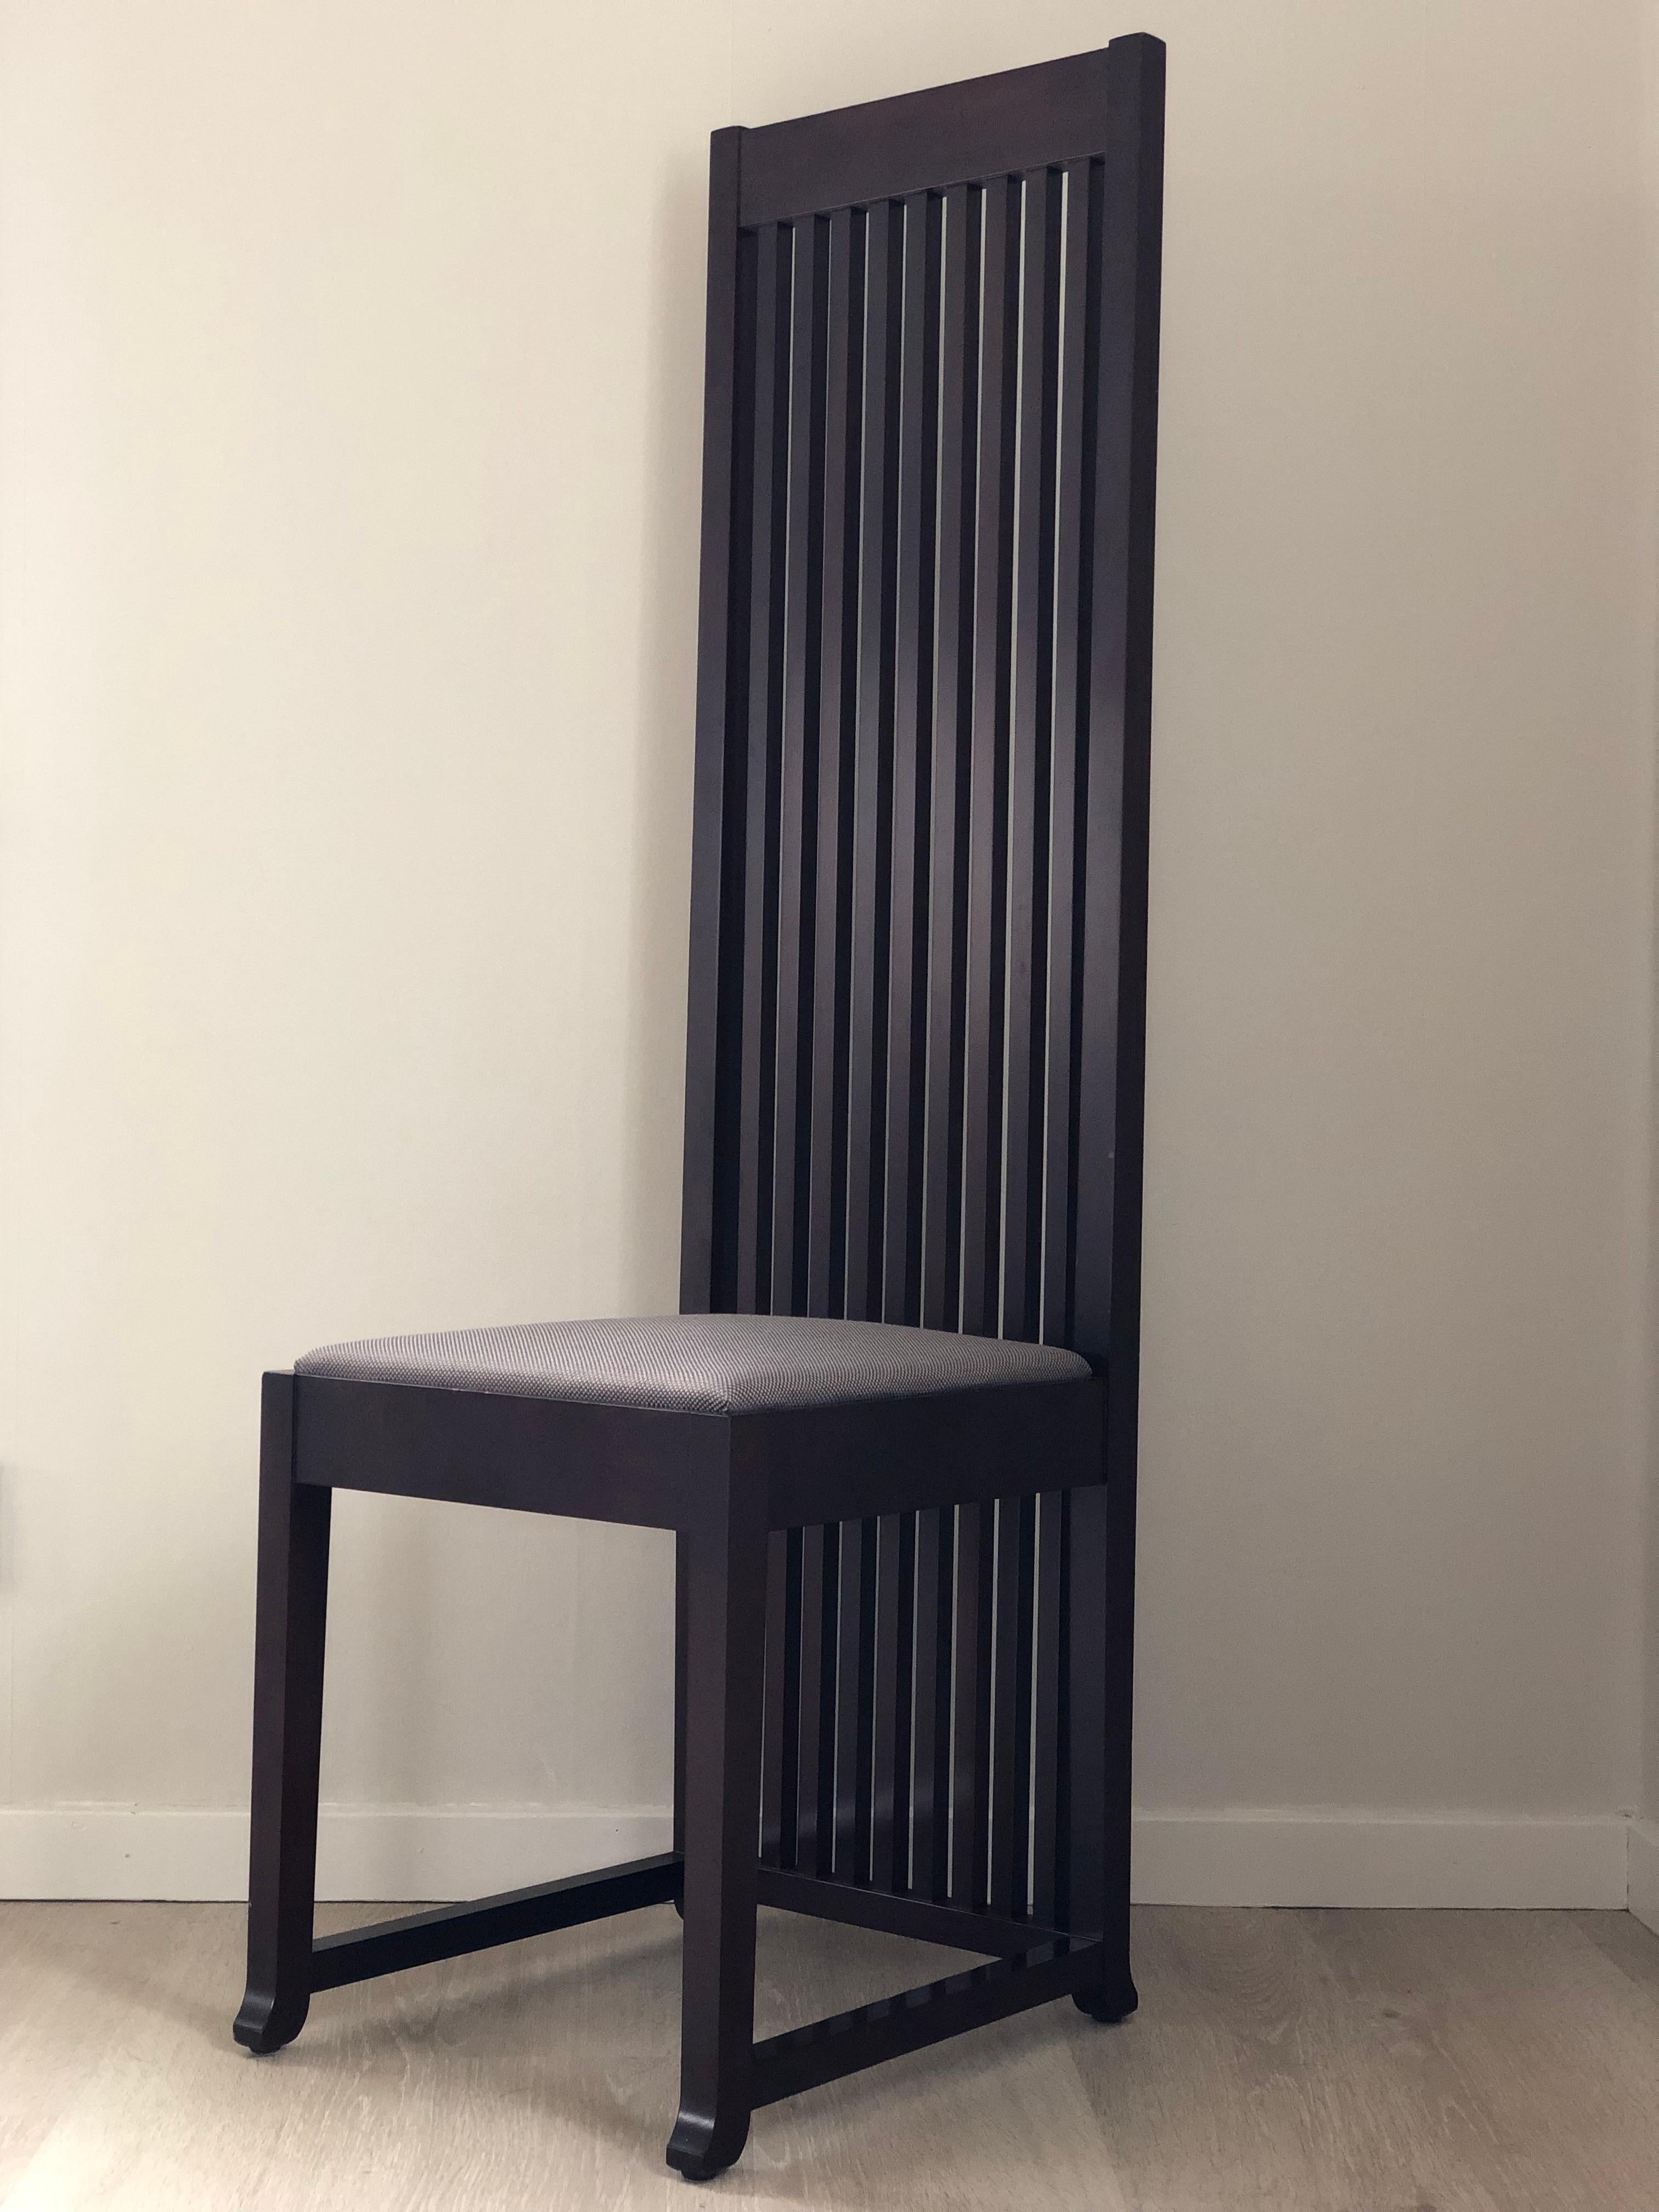 2 Cassina Stühle Mit Präzision und Liebe zum Detail gefertigt, vereinen diese Stühle exquisites Design mit höchstem Komfort und sind damit eine perfekte Ergänzung für jede moderne oder klassische Einrichtung. 
Dieser 1908 von Frank Lloyd Wright für